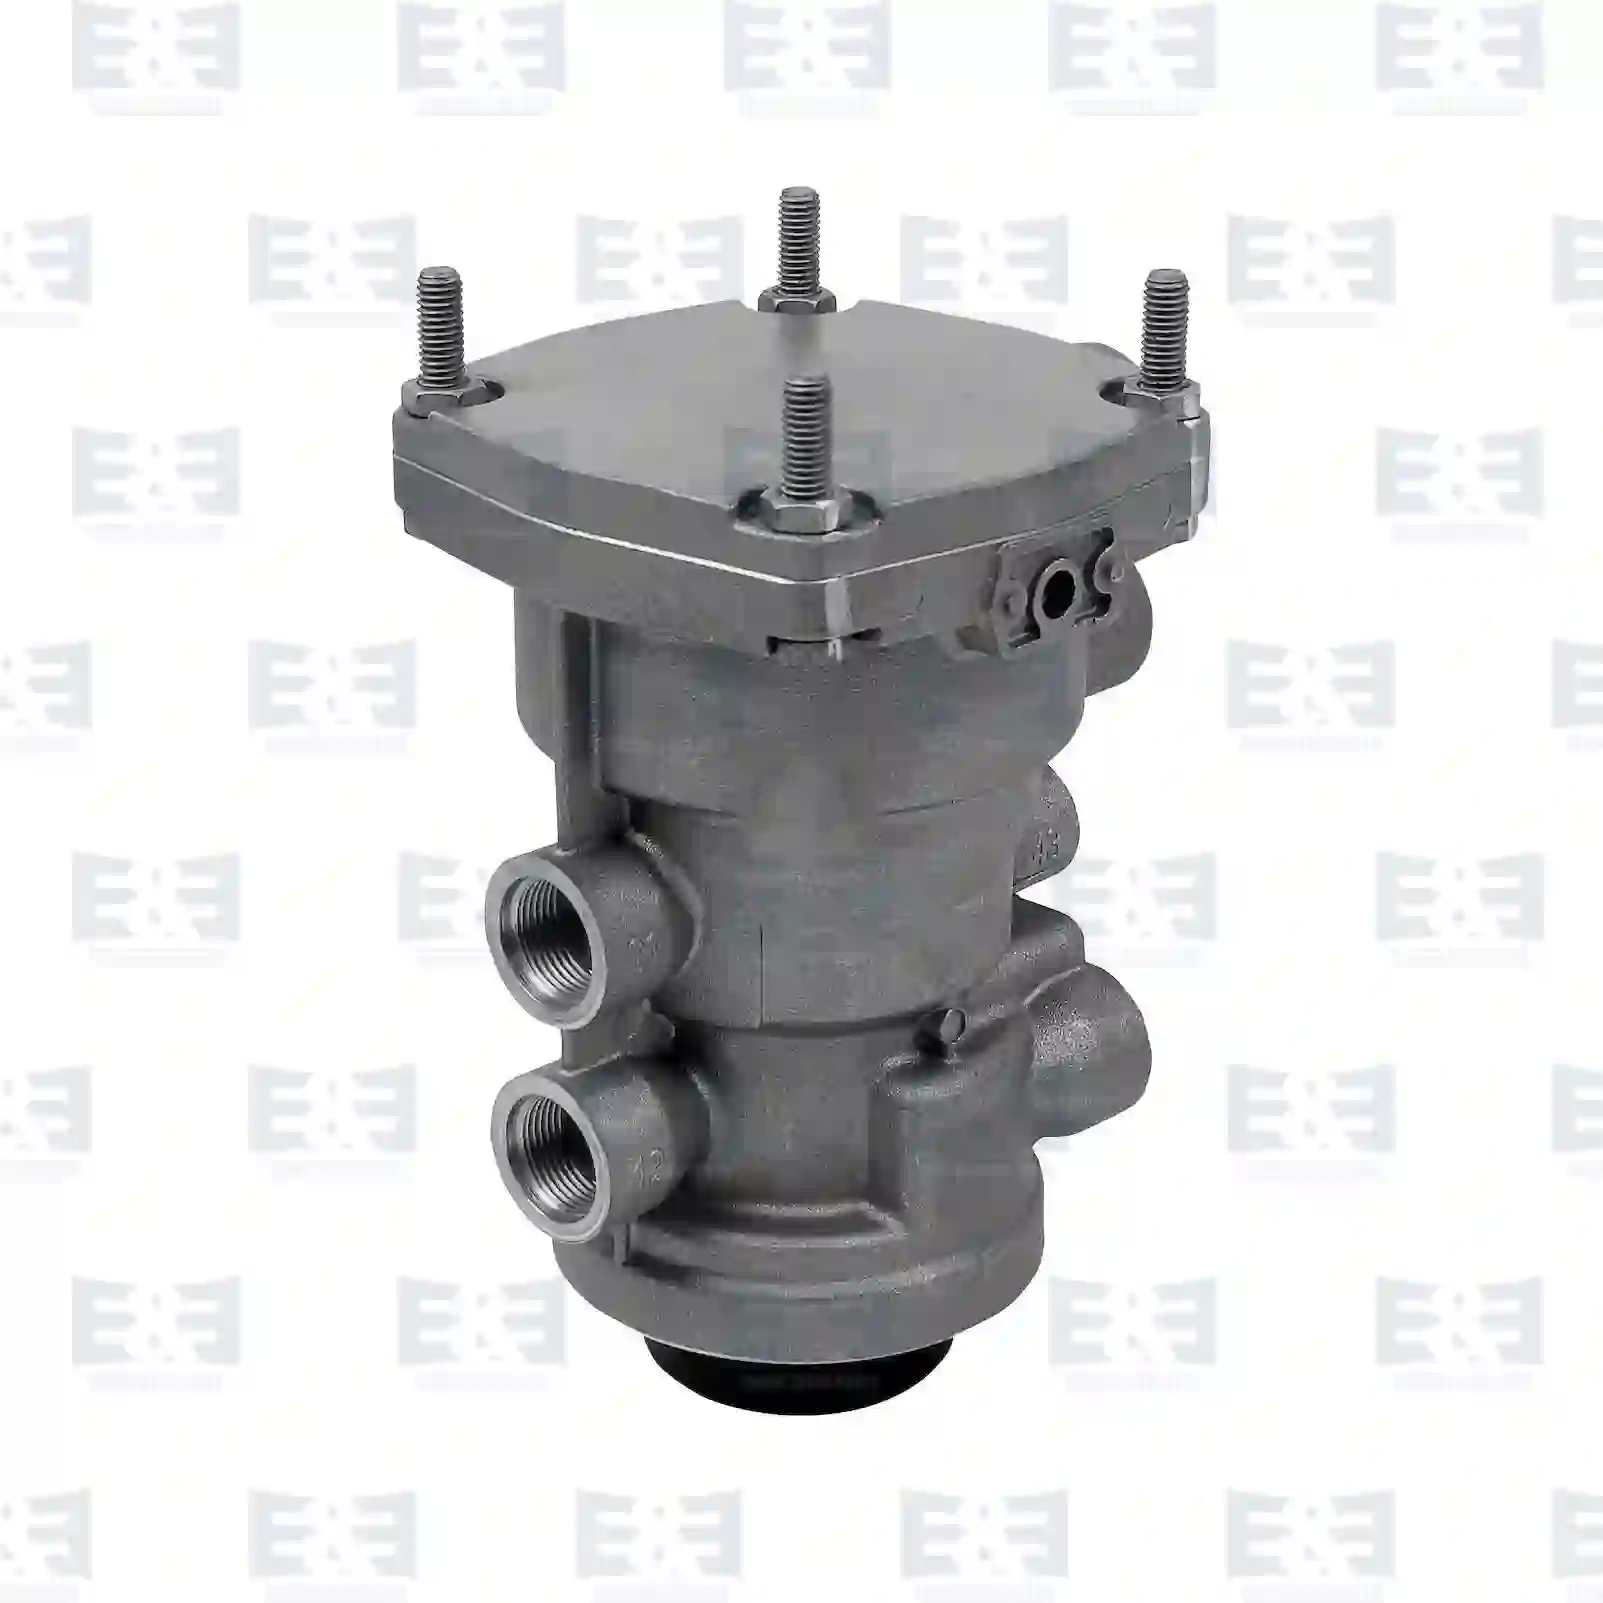 Trailer control valve, 2E2294770, 1259855, 1259855A, 1259855R, 1339396, 1339396A, 1339396R, 1450726, 1450726A, 1450726R, 1505477, 82523016015, 5021170462 ||  2E2294770 E&E Truck Spare Parts | Truck Spare Parts, Auotomotive Spare Parts Trailer control valve, 2E2294770, 1259855, 1259855A, 1259855R, 1339396, 1339396A, 1339396R, 1450726, 1450726A, 1450726R, 1505477, 82523016015, 5021170462 ||  2E2294770 E&E Truck Spare Parts | Truck Spare Parts, Auotomotive Spare Parts